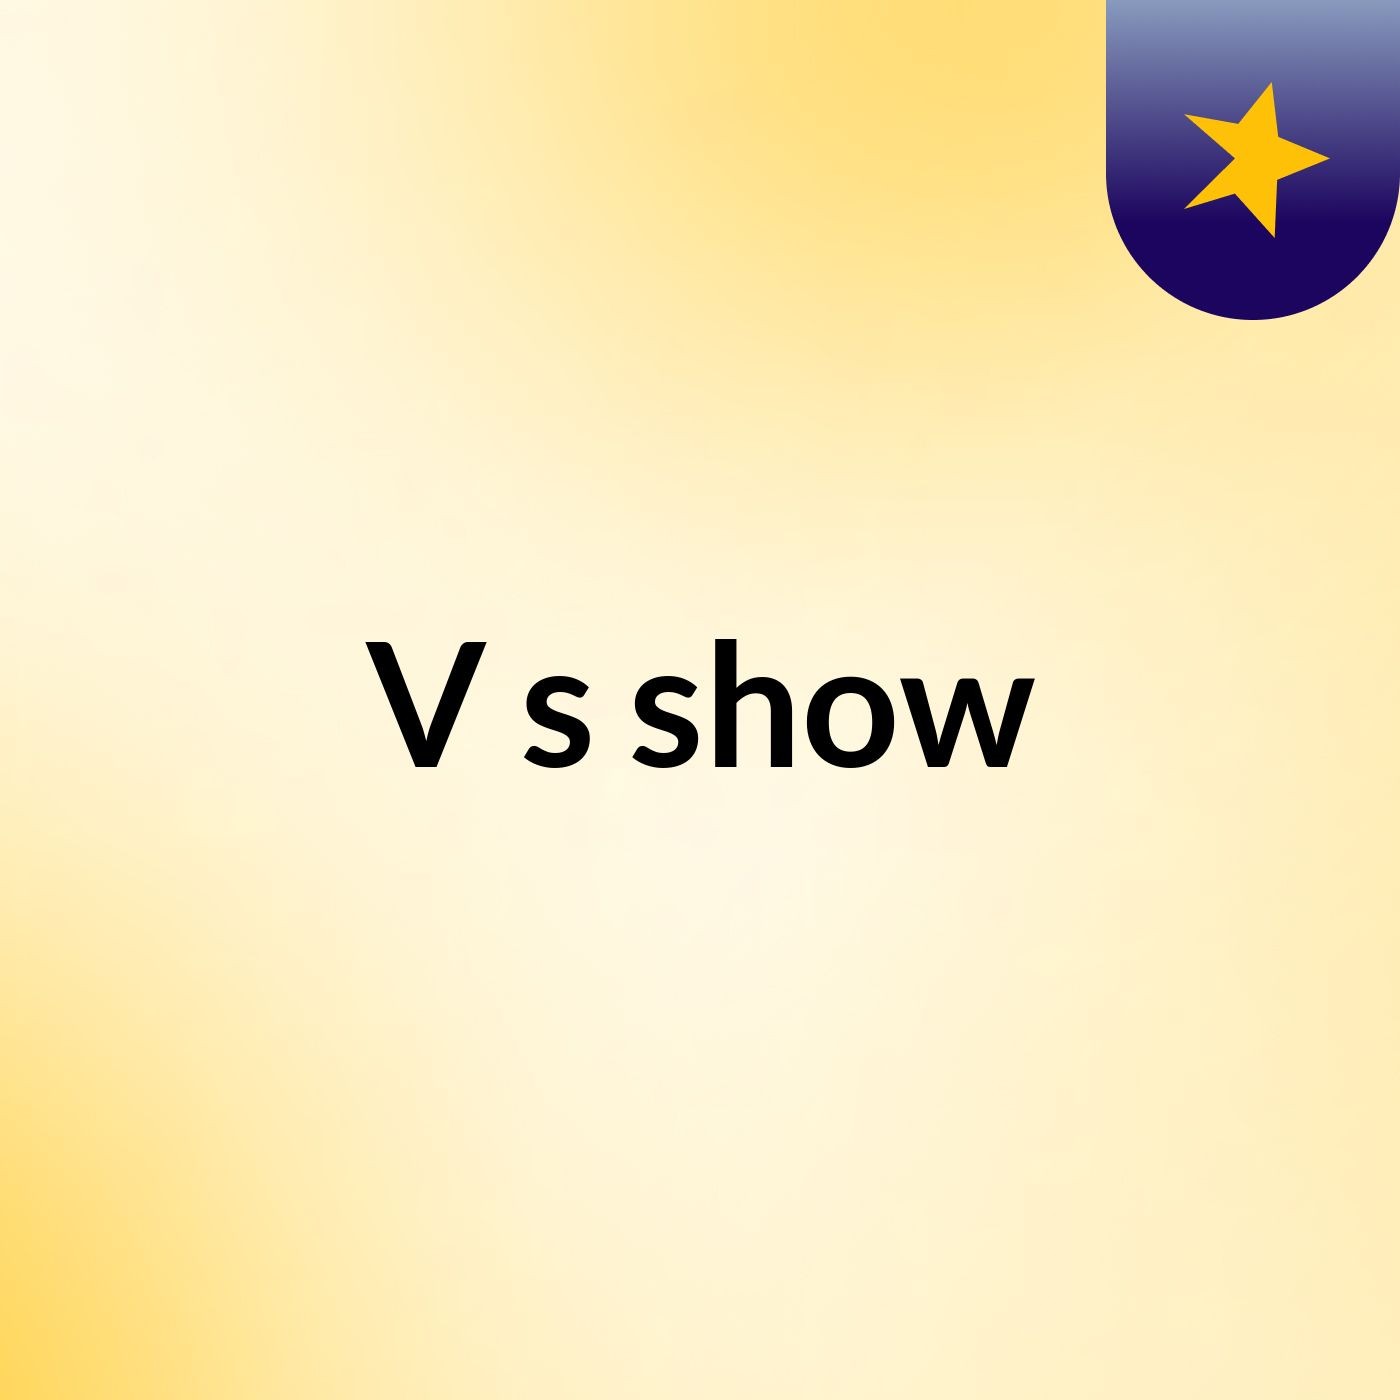 V's show